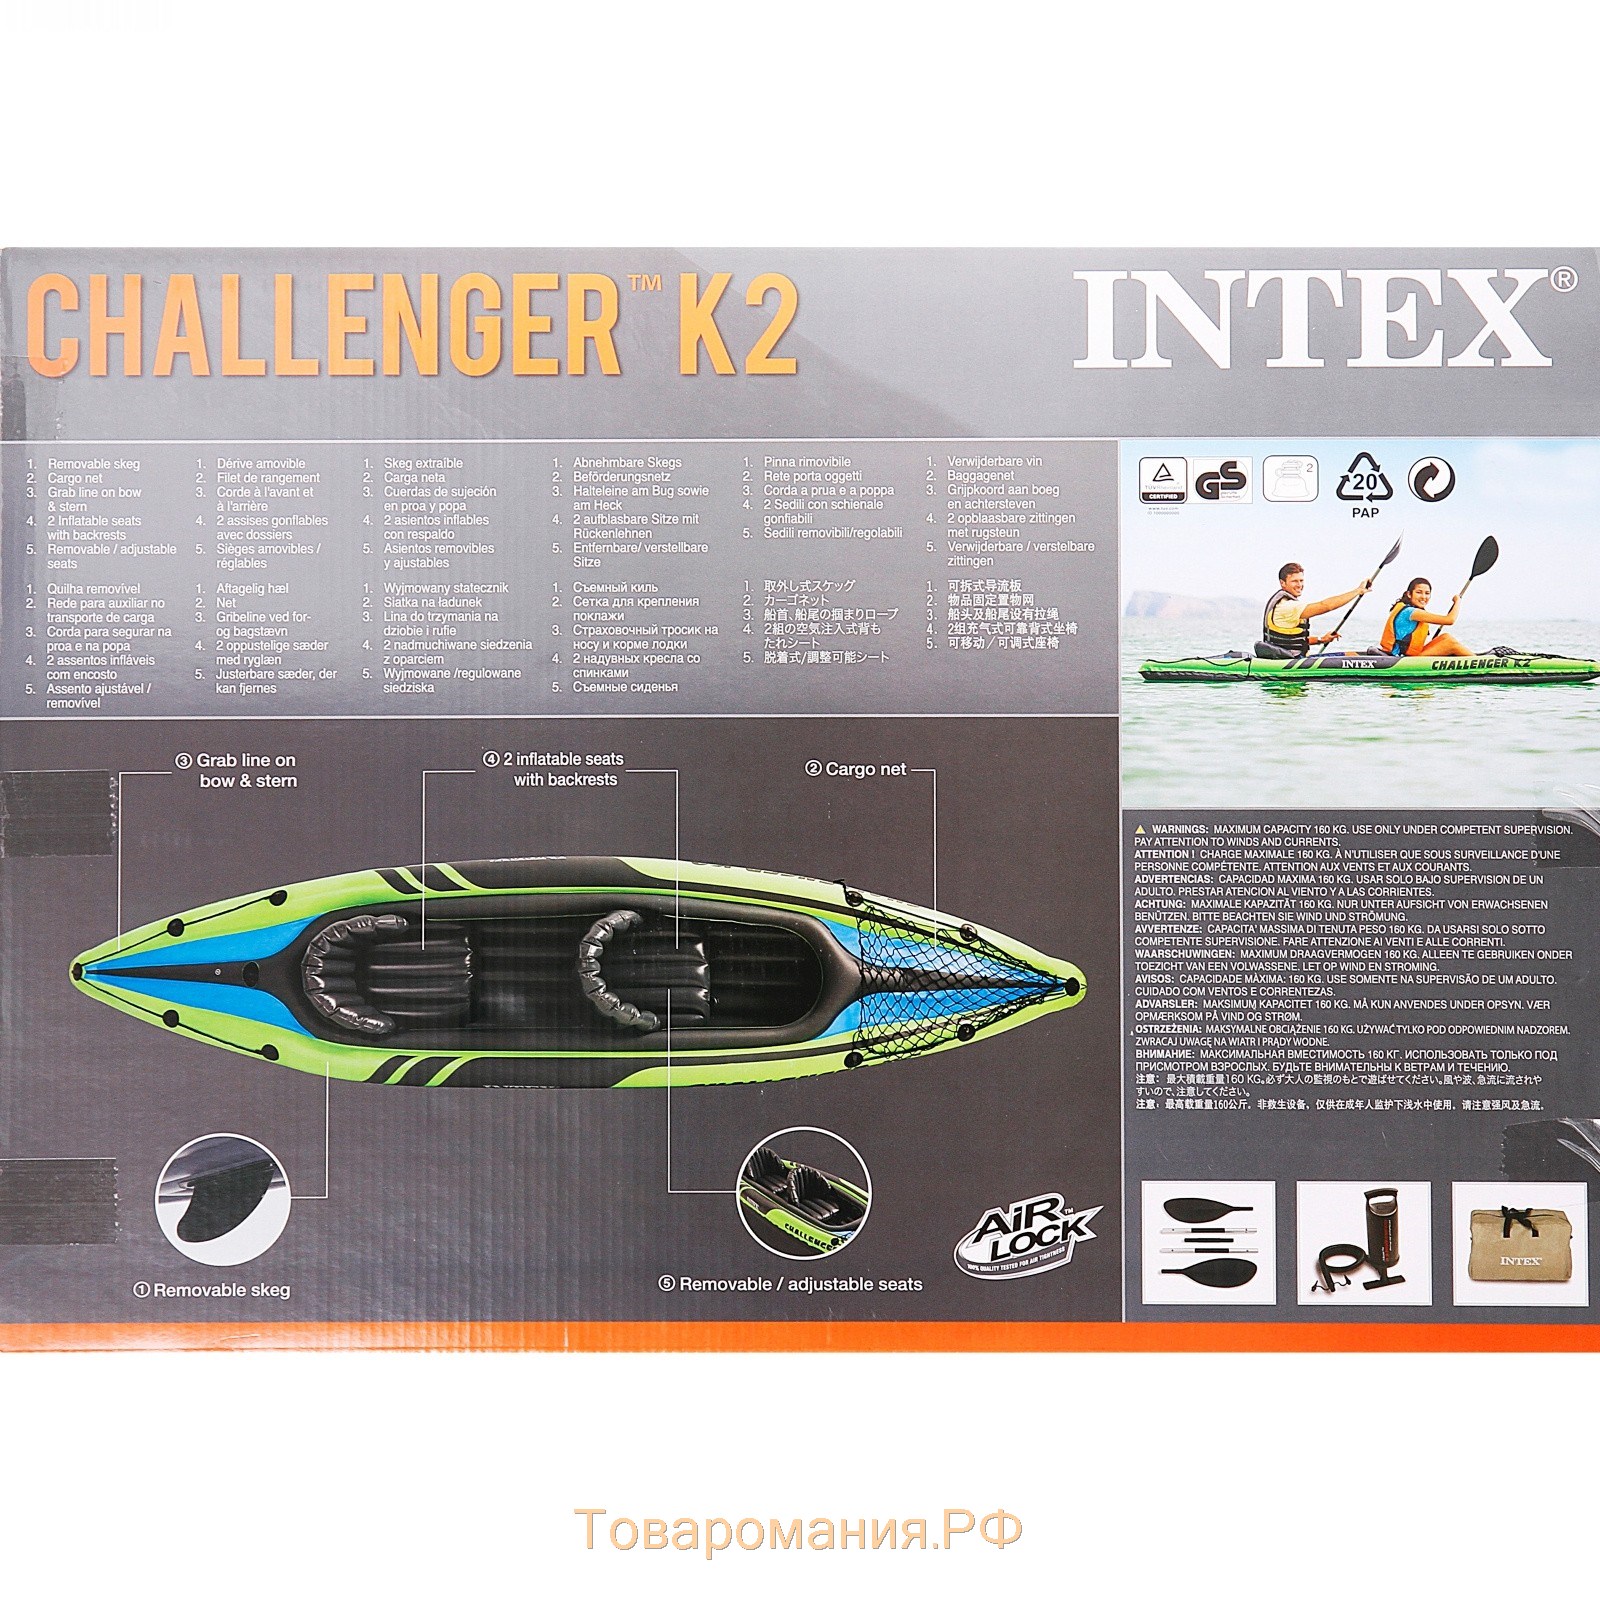 Лодка Challenger К2, 2-местная, 351 х 76 х 38 см, алюминиевые вёсла 213 см, ручной насос, 2 сиденья, до 160 кг, 68306NP INTEX